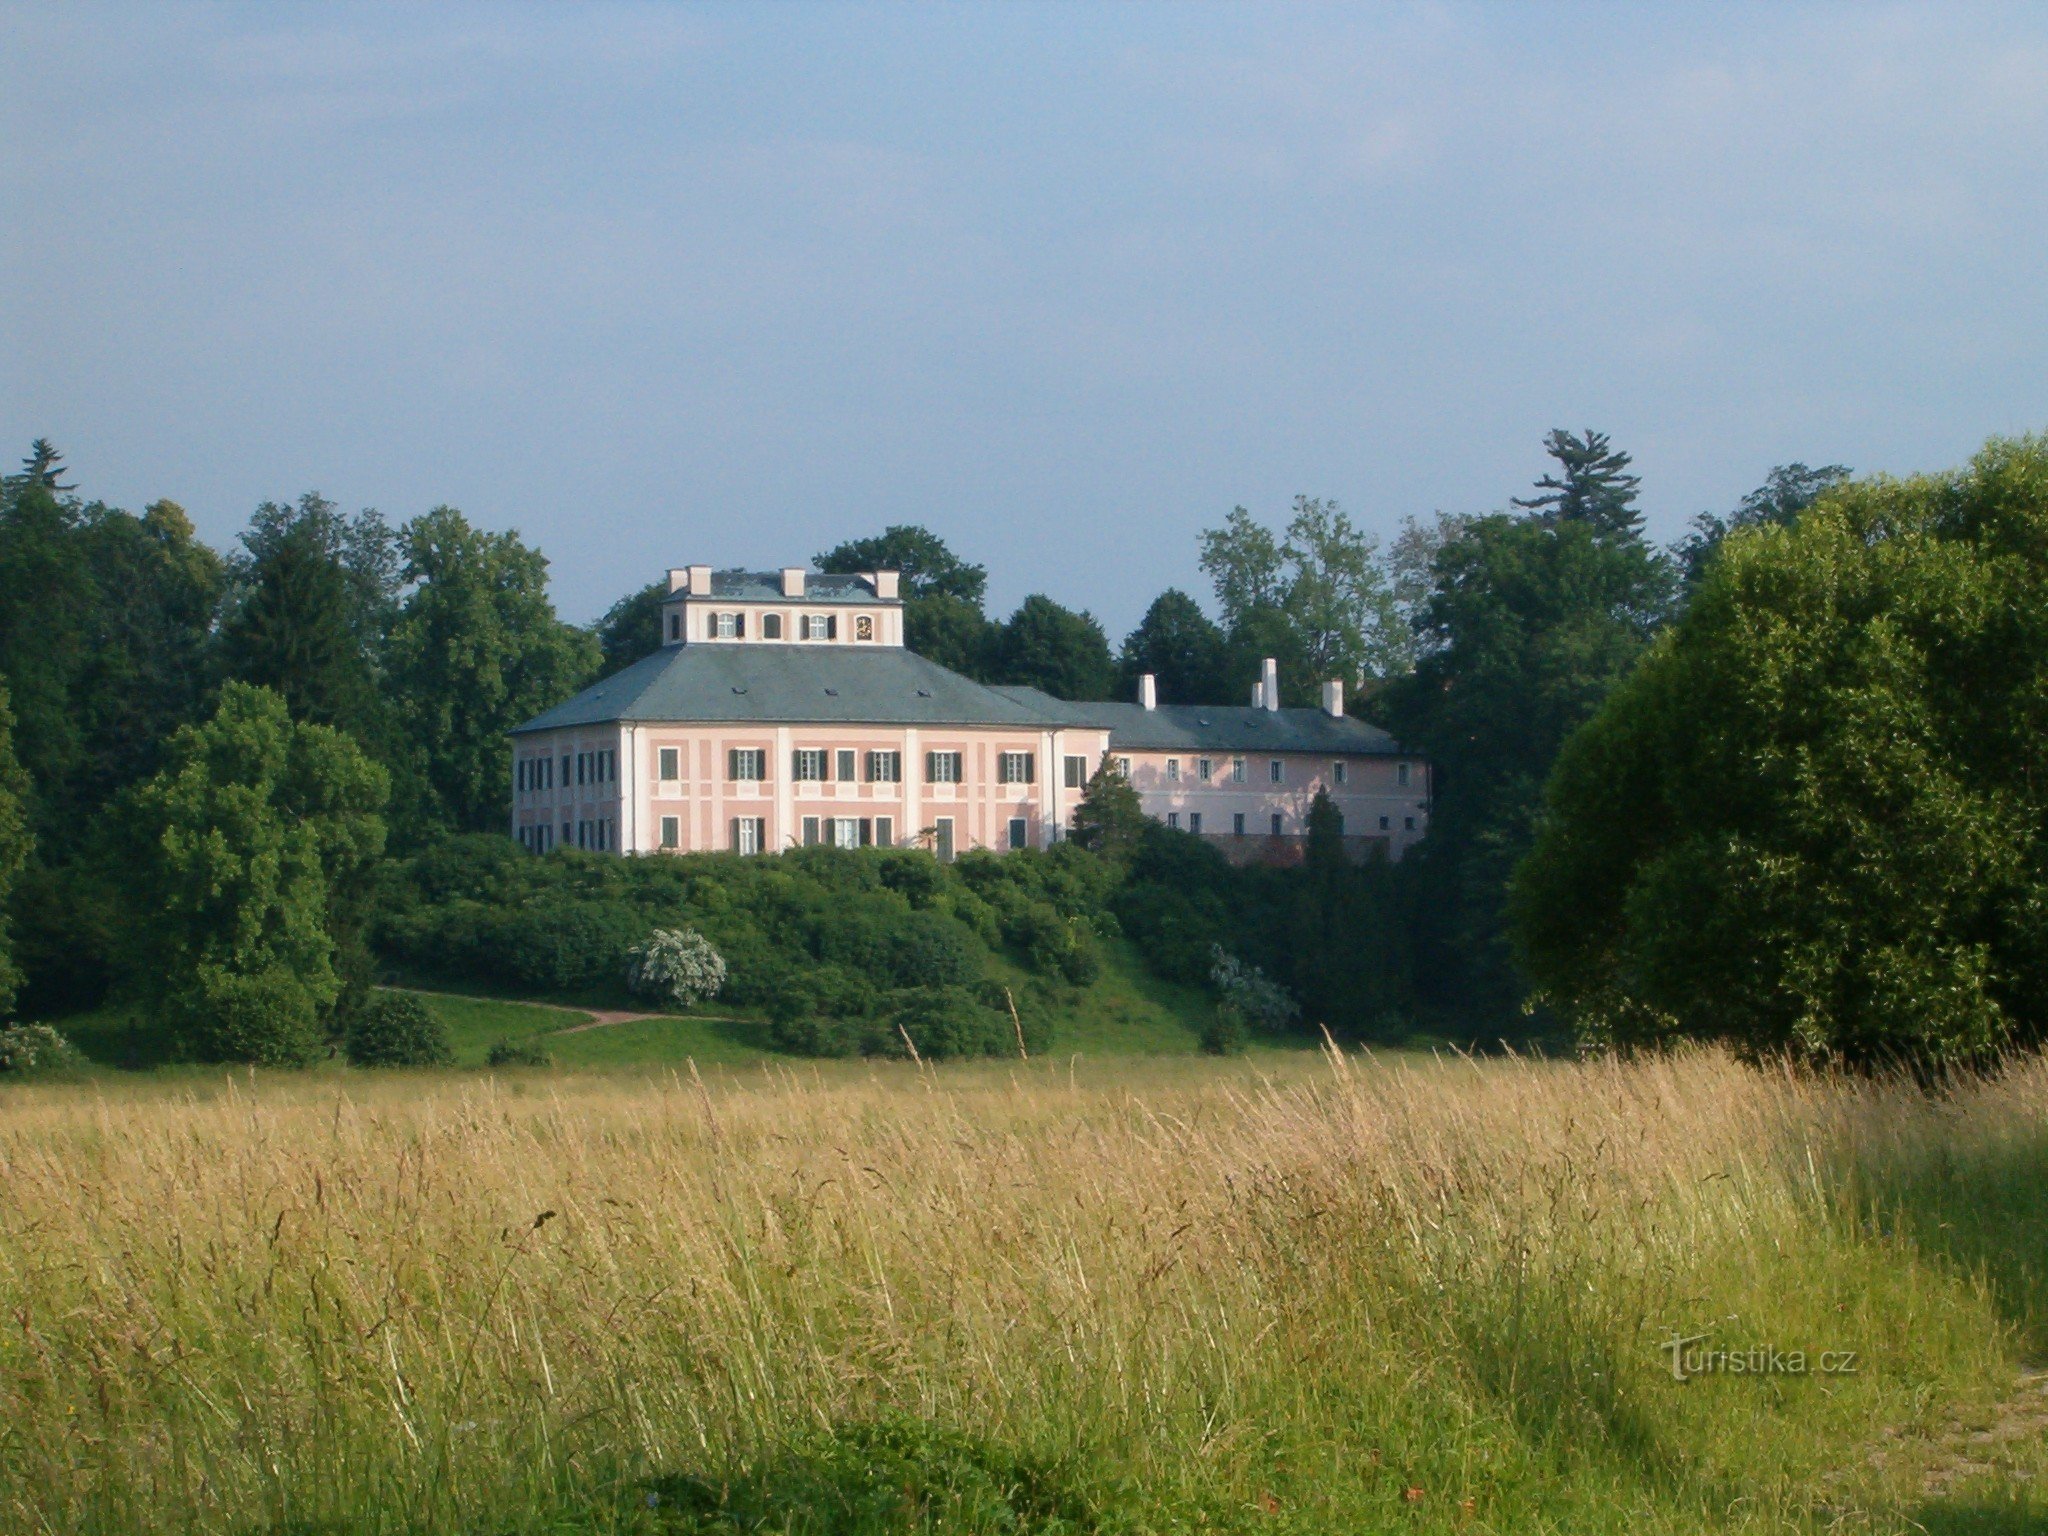 03 Castelo de Ratibořice